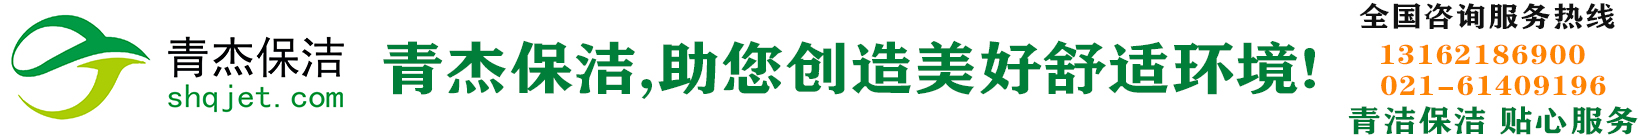 上海保洁公司|上海青杰保洁